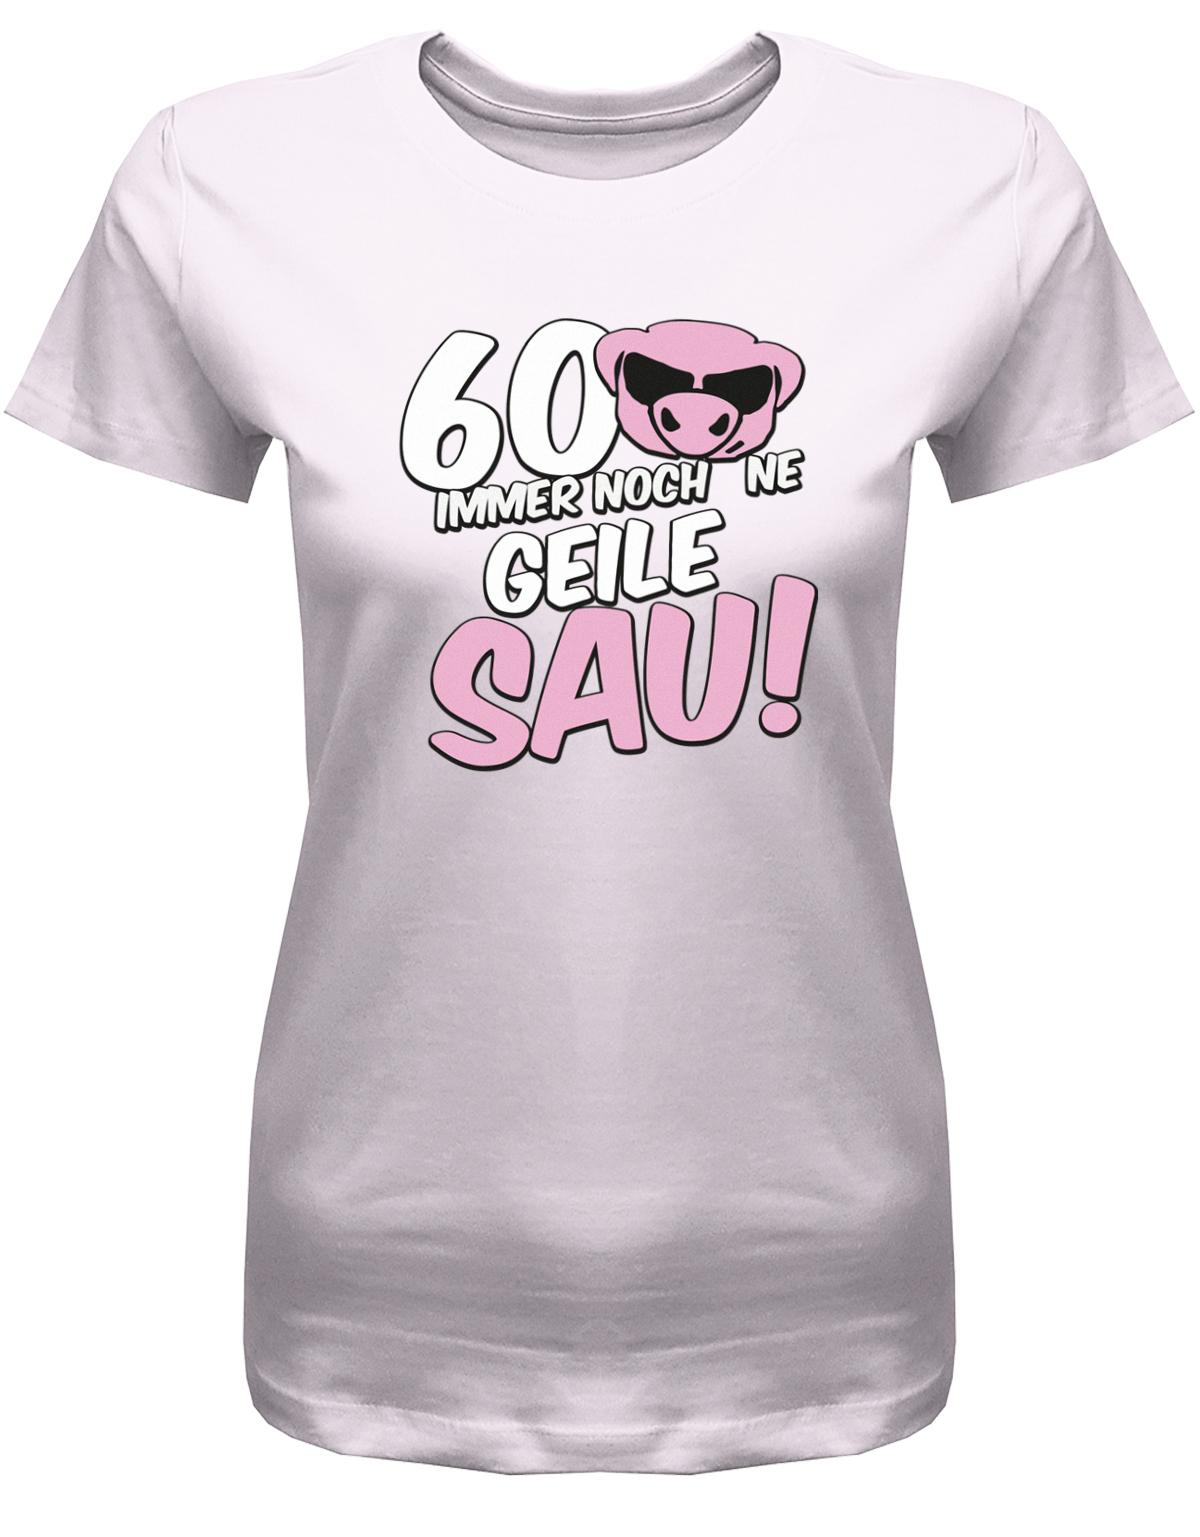 Lustiges T-Shirt zum 60 Geburtstag für die Frau Bedruckt mit 60 Immer noch 'ne geile Sau! Sau mit Sonnenbrille Rosa